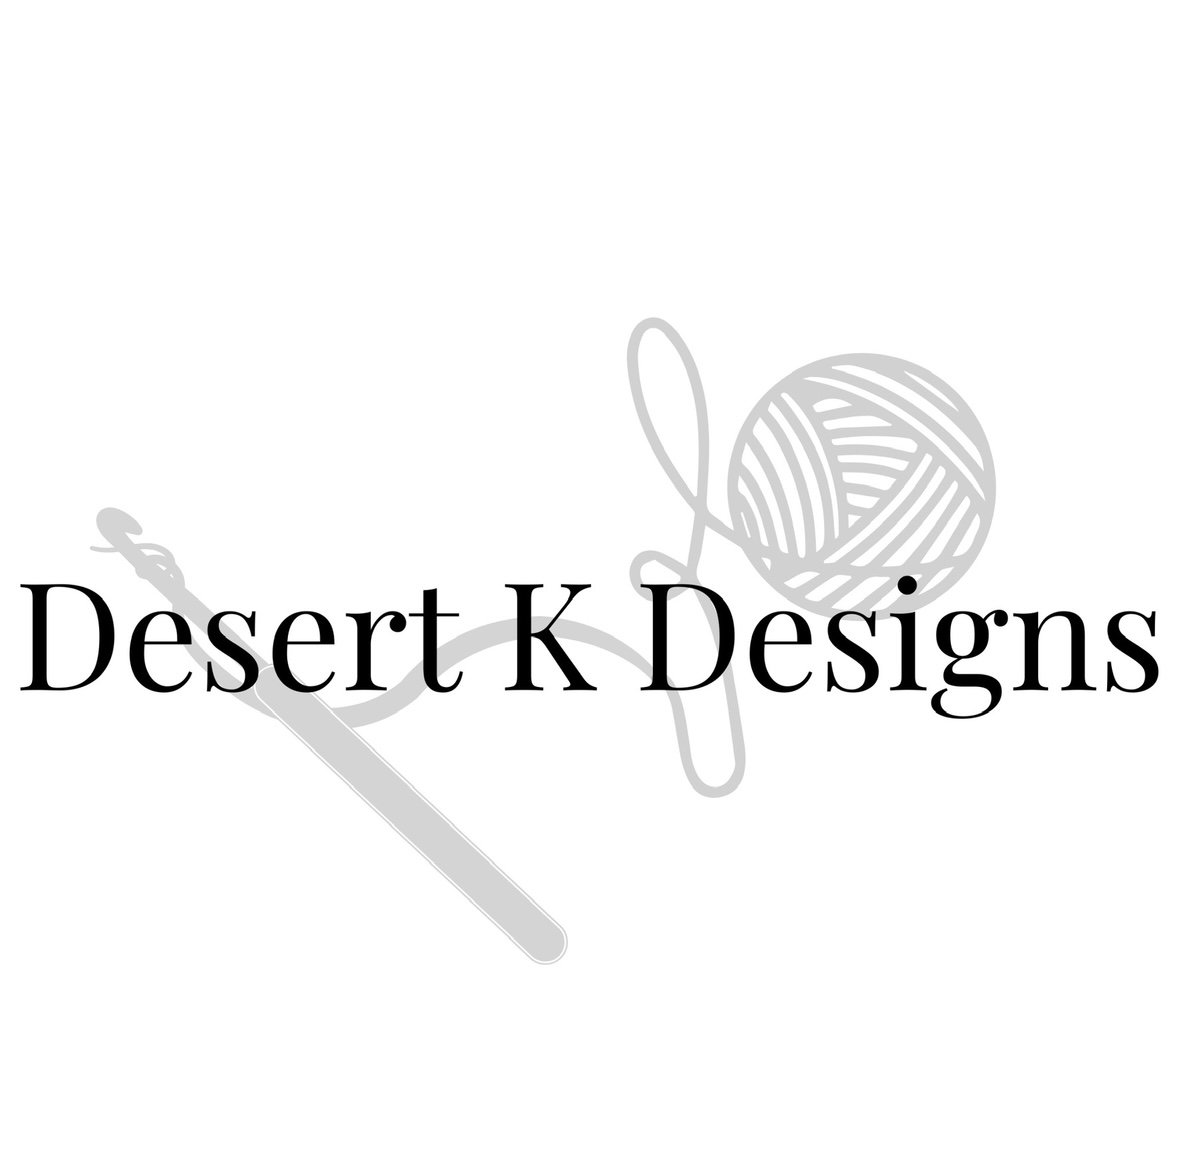 Desert K Designs